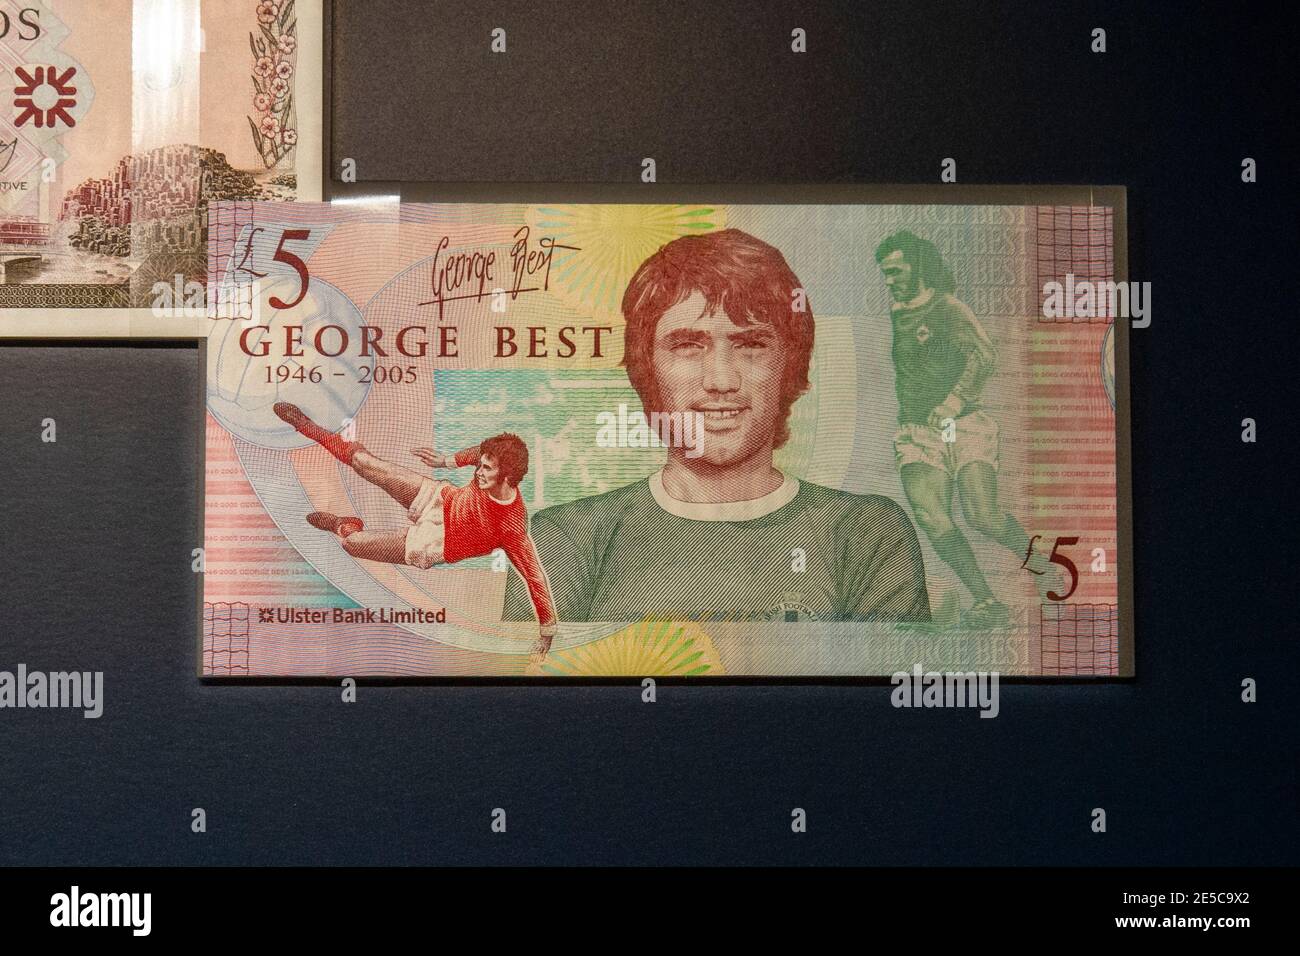 Ulster Bank Ltd 5 livres commémorant la légende du football George Best, The Money Gallery, Ashmolean Museum, Oxford, Royaume-Uni. Banque D'Images